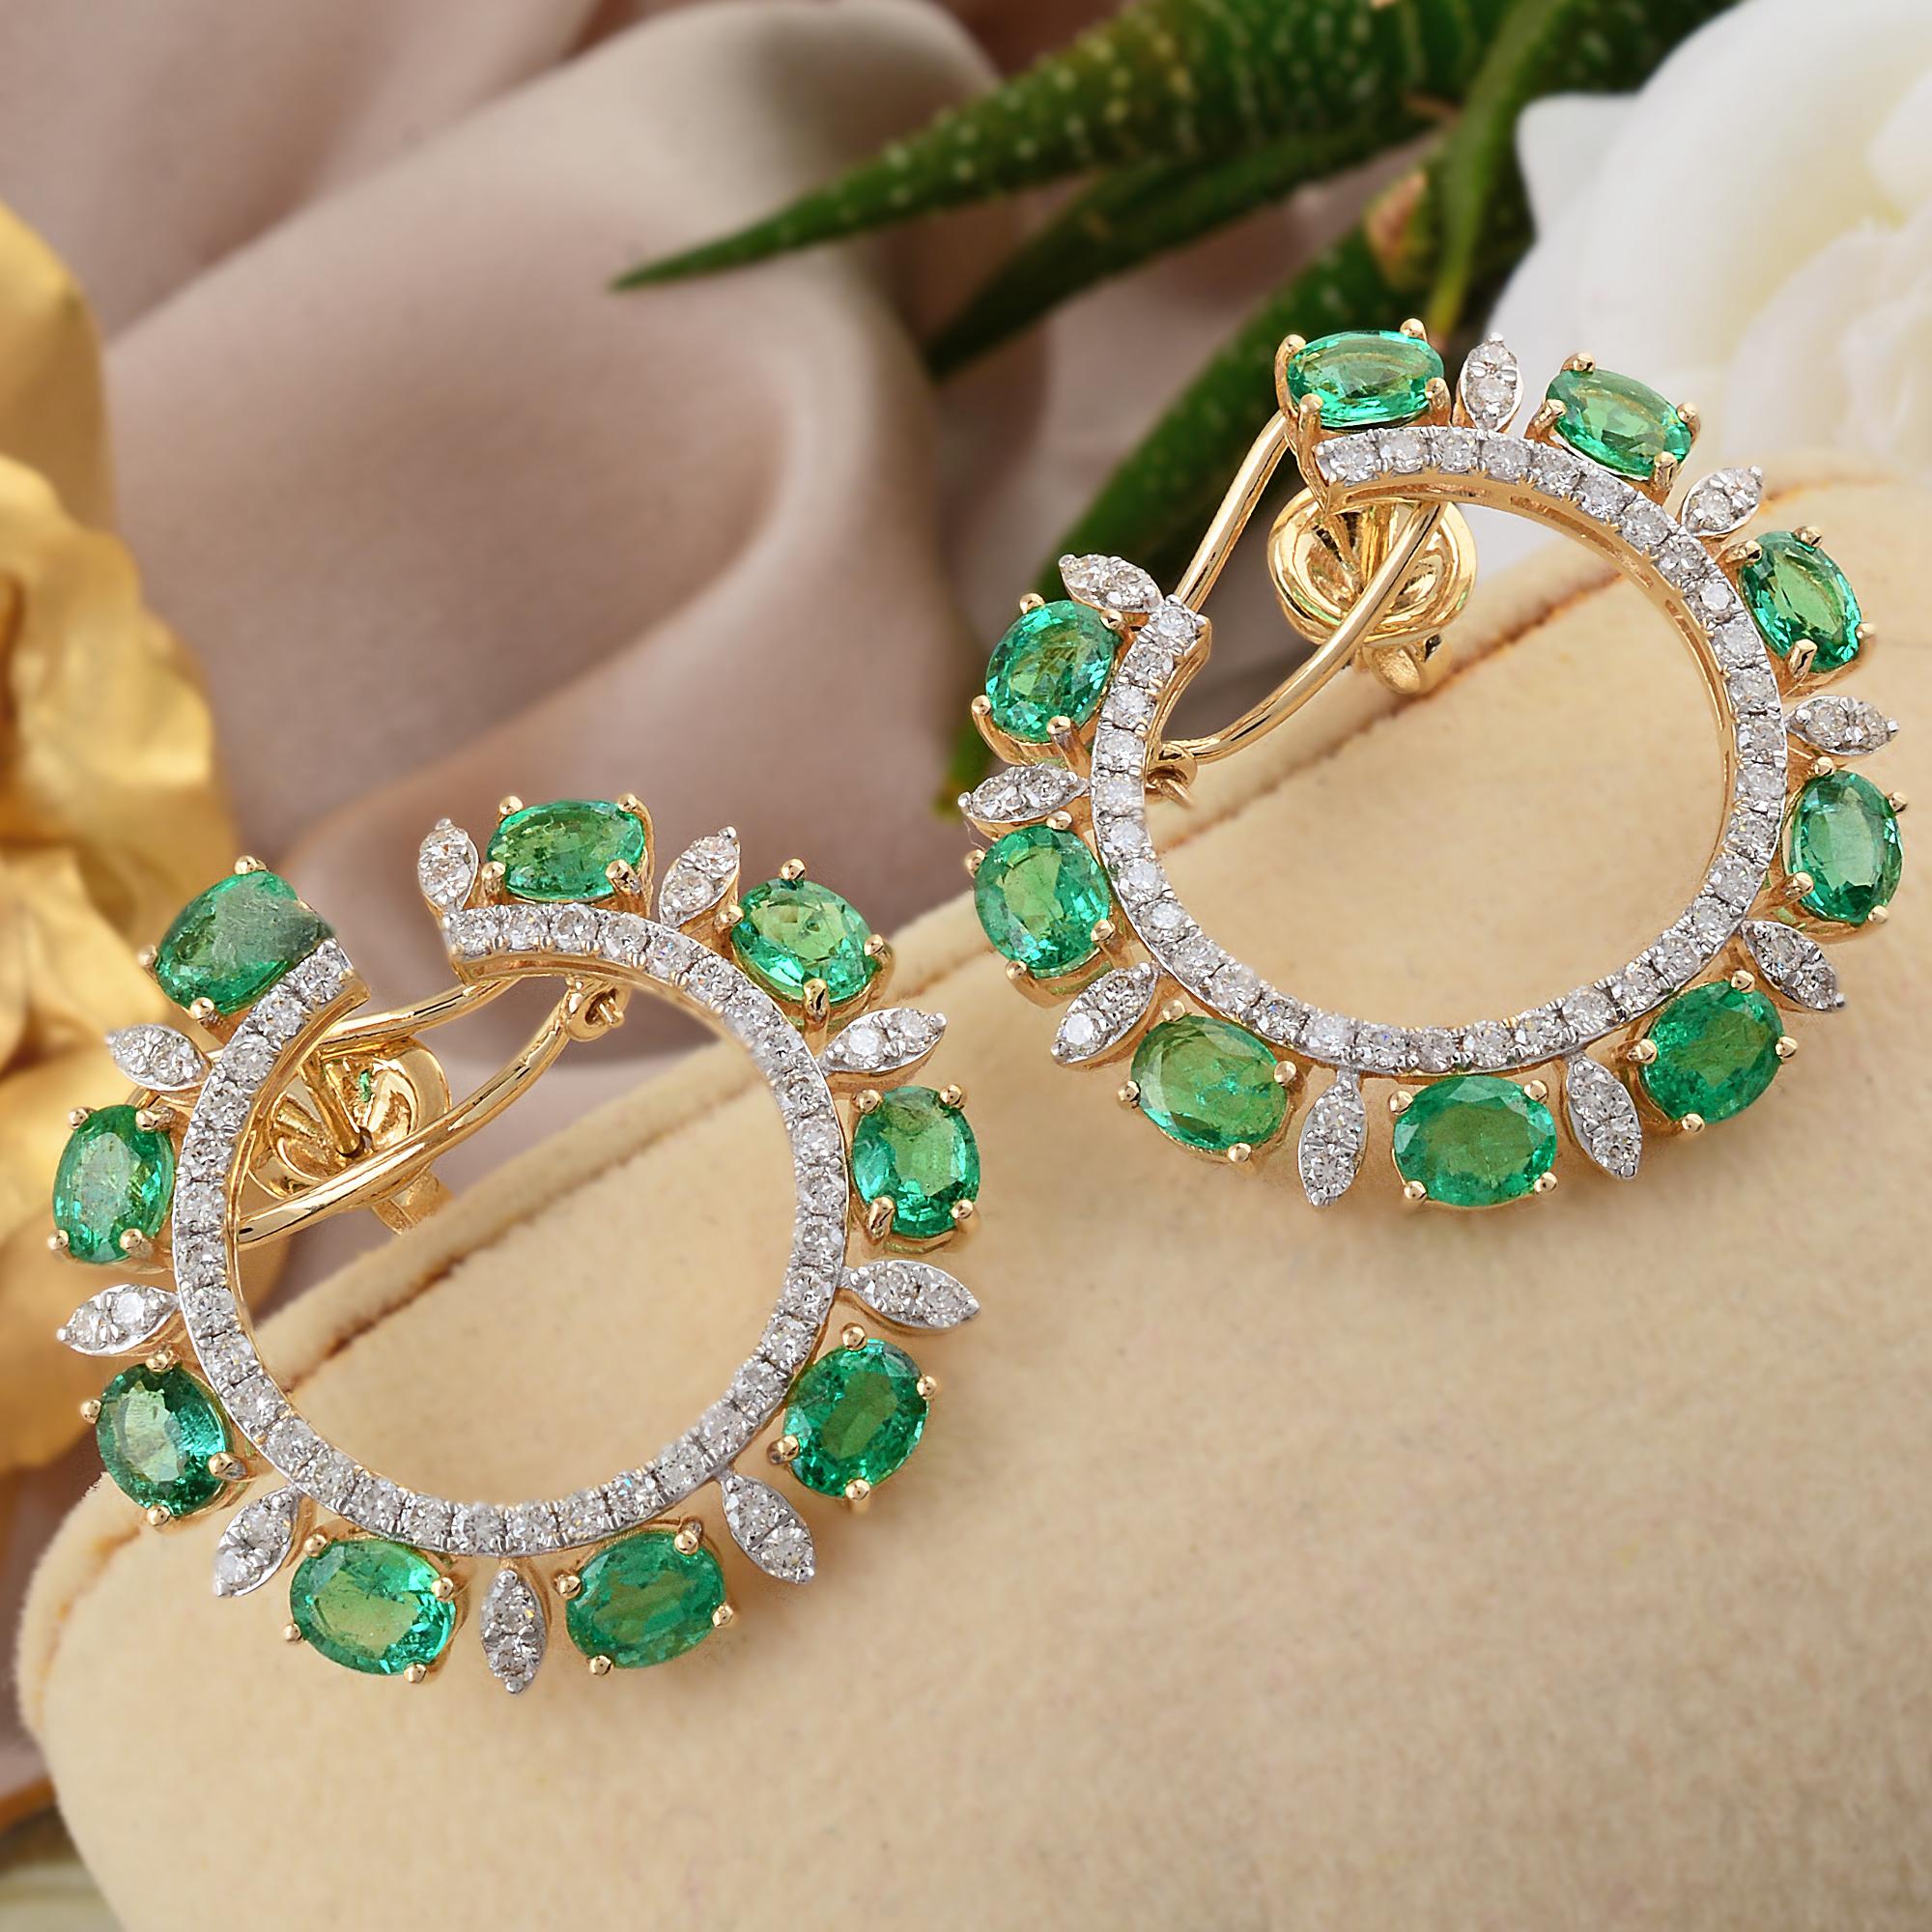 Oval Cut Oval Zambian Emerald Gemstone Lever Back Earrings Diamond 18 Karat Yellow Gold For Sale